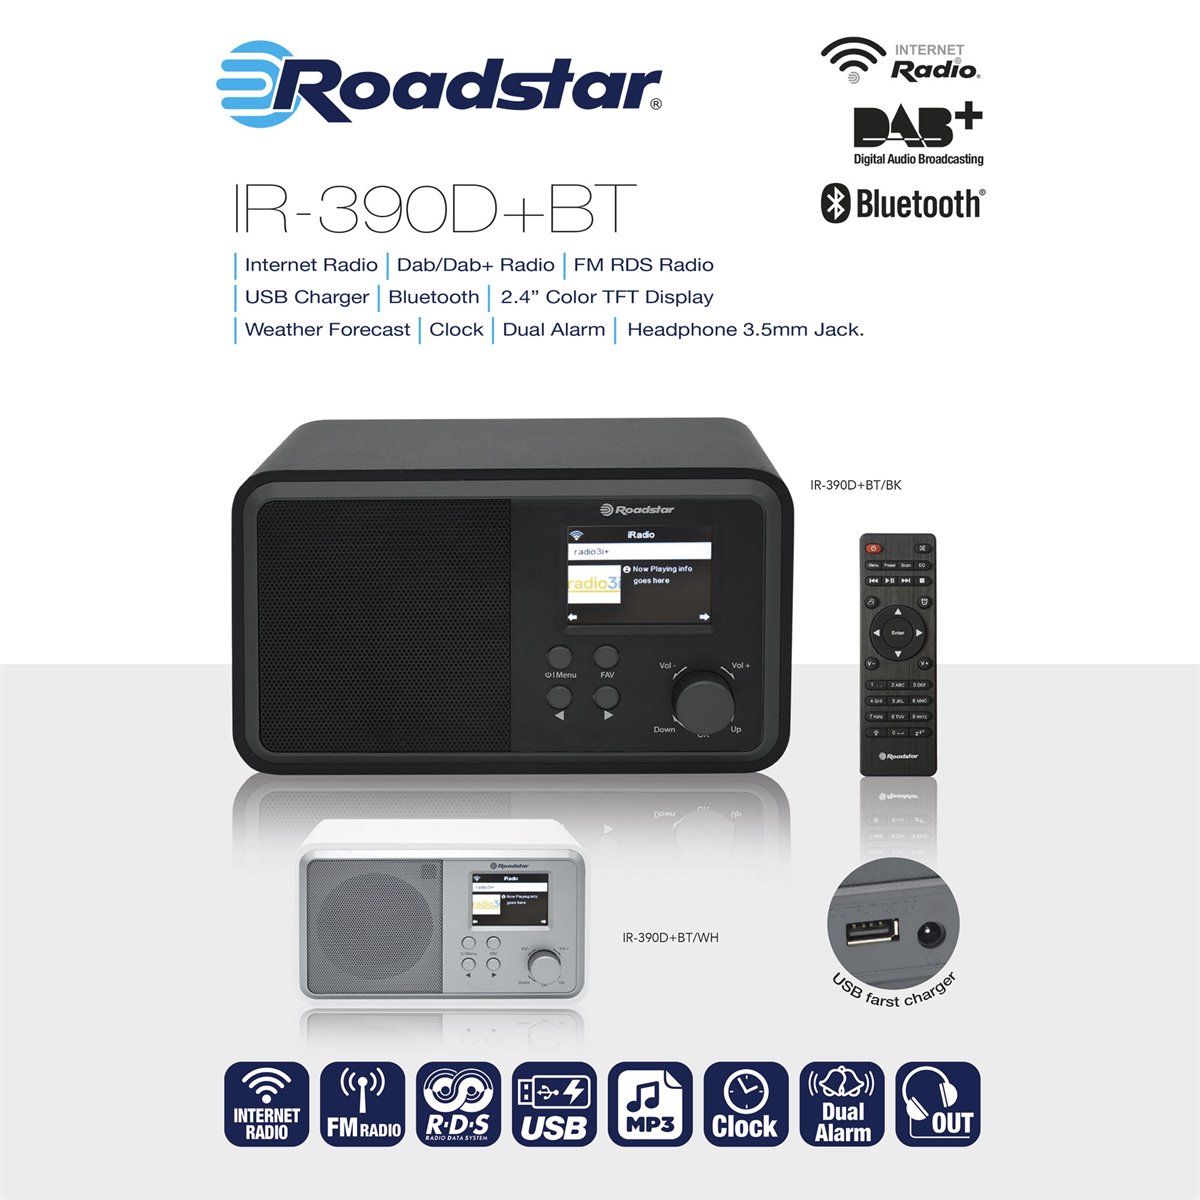 Microcadena Radio Internet Wi-fi Dab+/fm, Reproductor Cd-mp3, Bluetooth,  Usb Mando A Distancia Blanco Roadstar Ir-540d+btwh